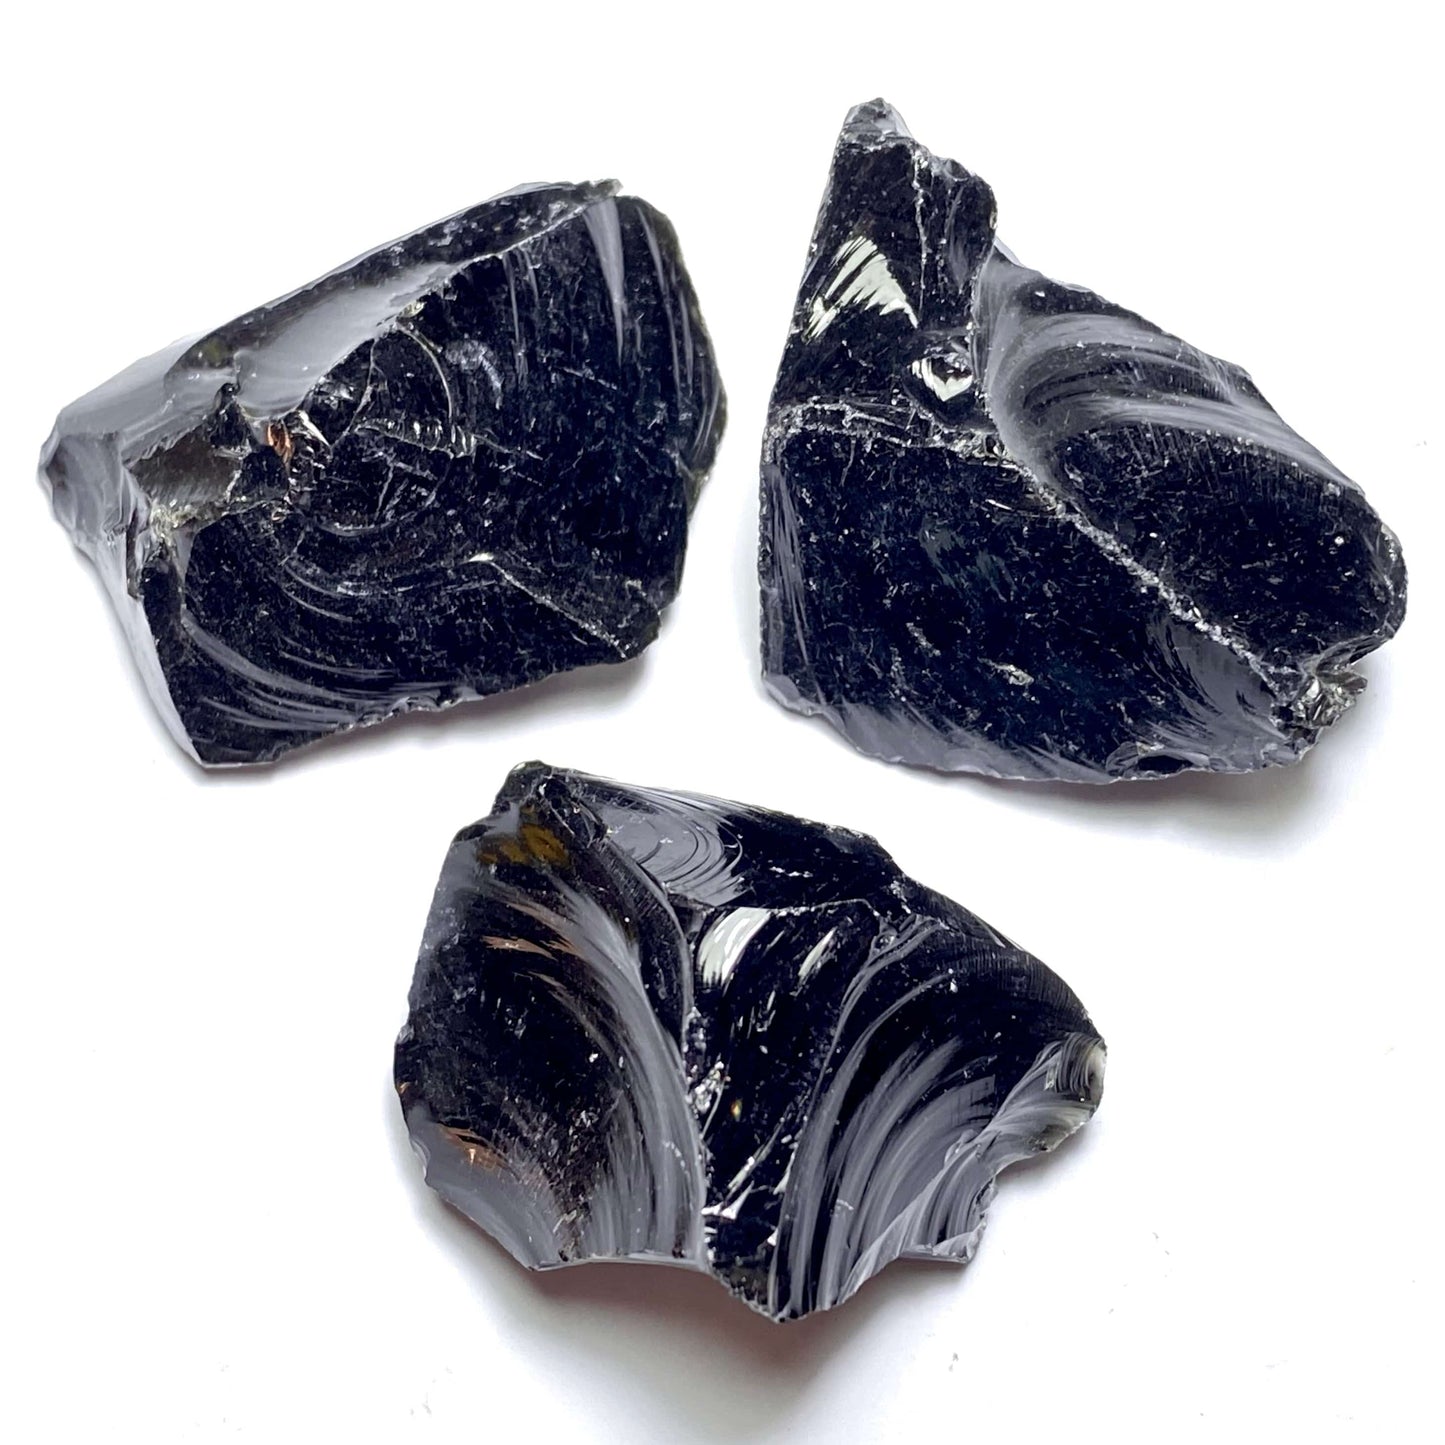 Tenetpietre Pietre grezze Una pietra di circa 2-3 cm Ossidiana nera grezza